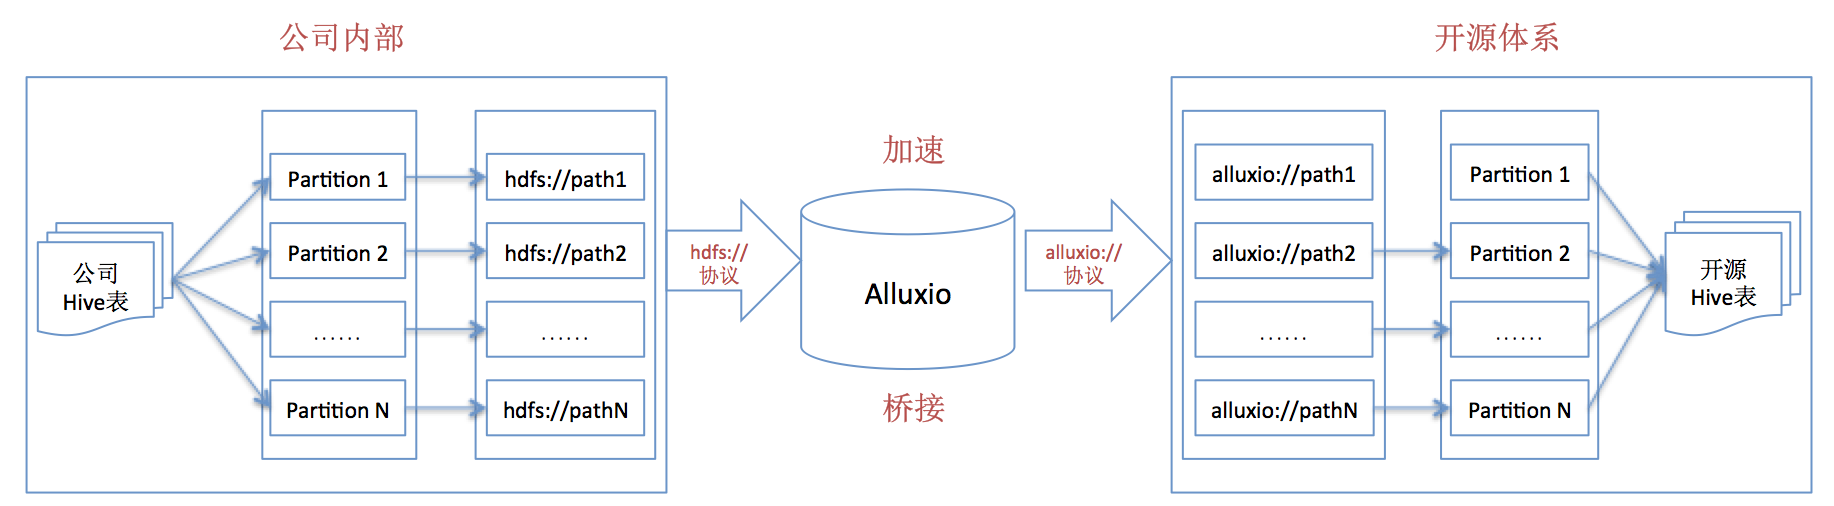 3. 基于Alluxio的解决方案